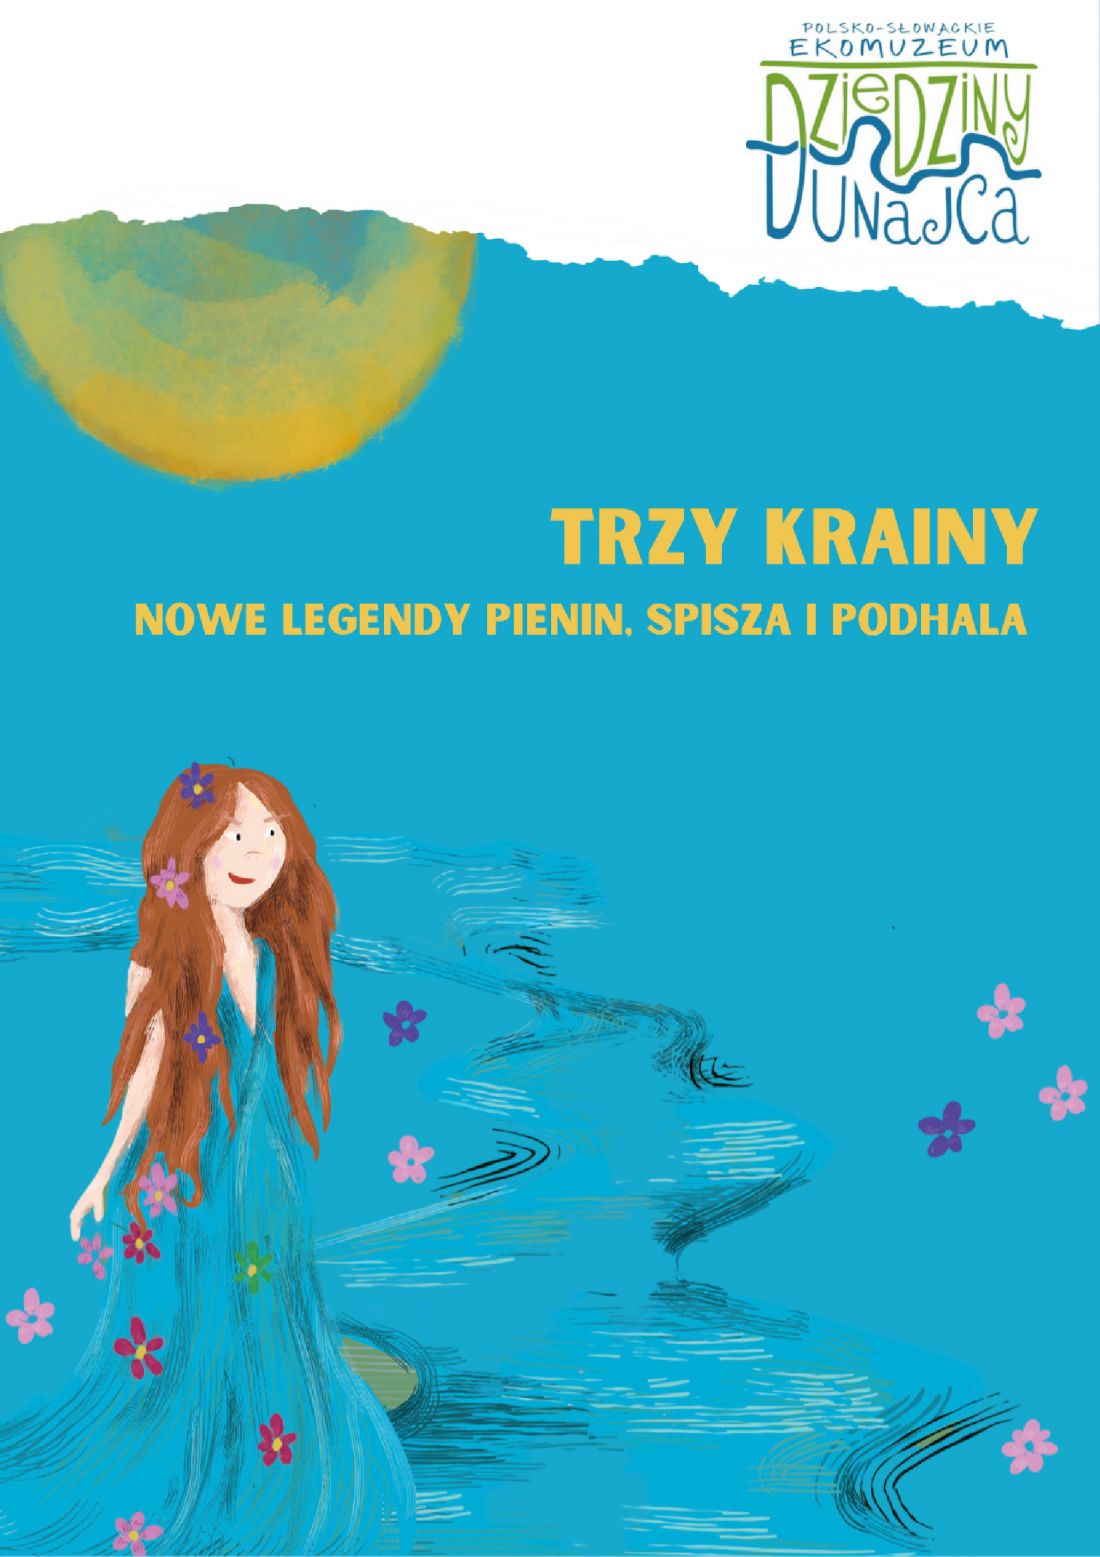 Pierwszy e-book Ekomuzeum Dziedziny Dunajca  pt. „Trzy krainy. Nowe legendy Pienin, Spisza i Podhala”